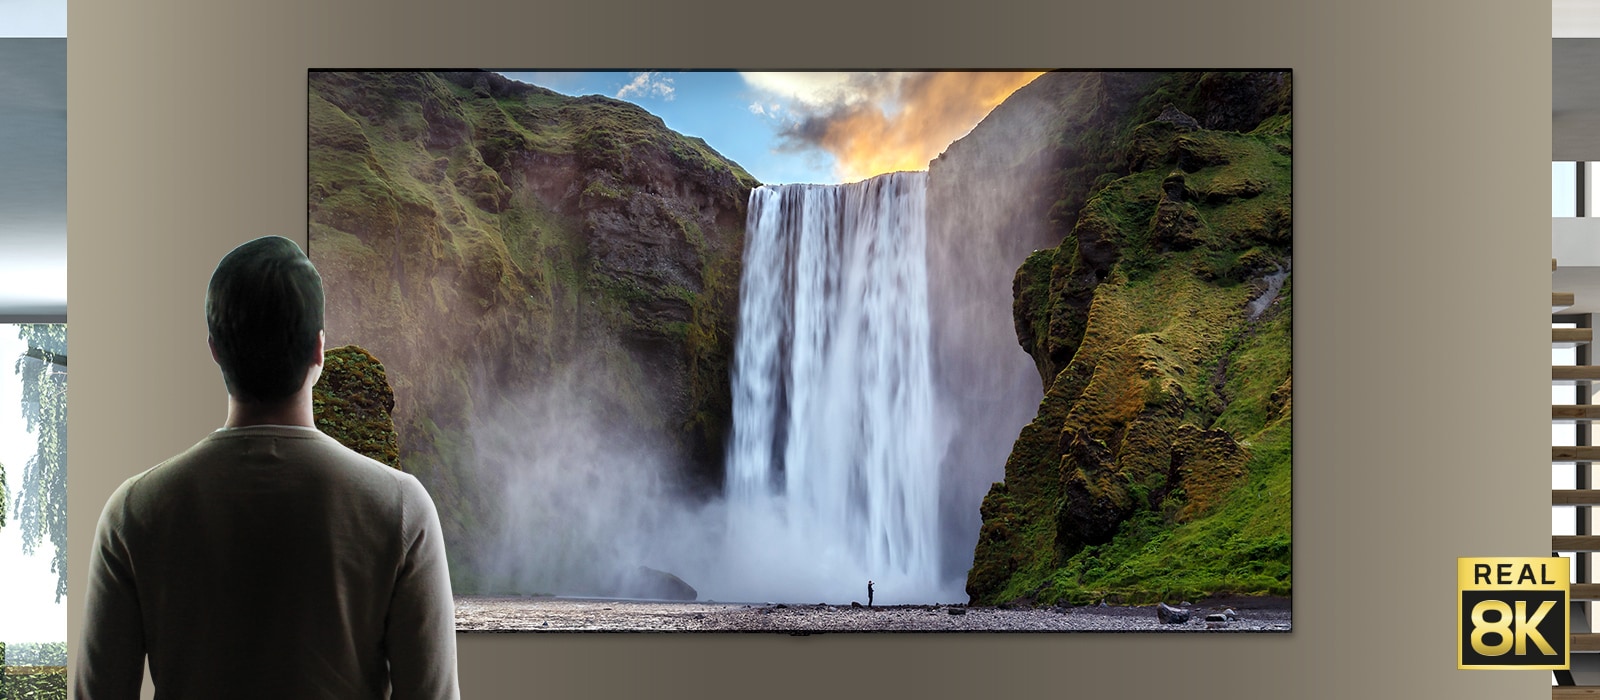 一个男人站在一个从悬崖流落的大瀑布前的壮观景色。场景缩小以显示该瀑布其实是安装在墙上的电视上的图像。